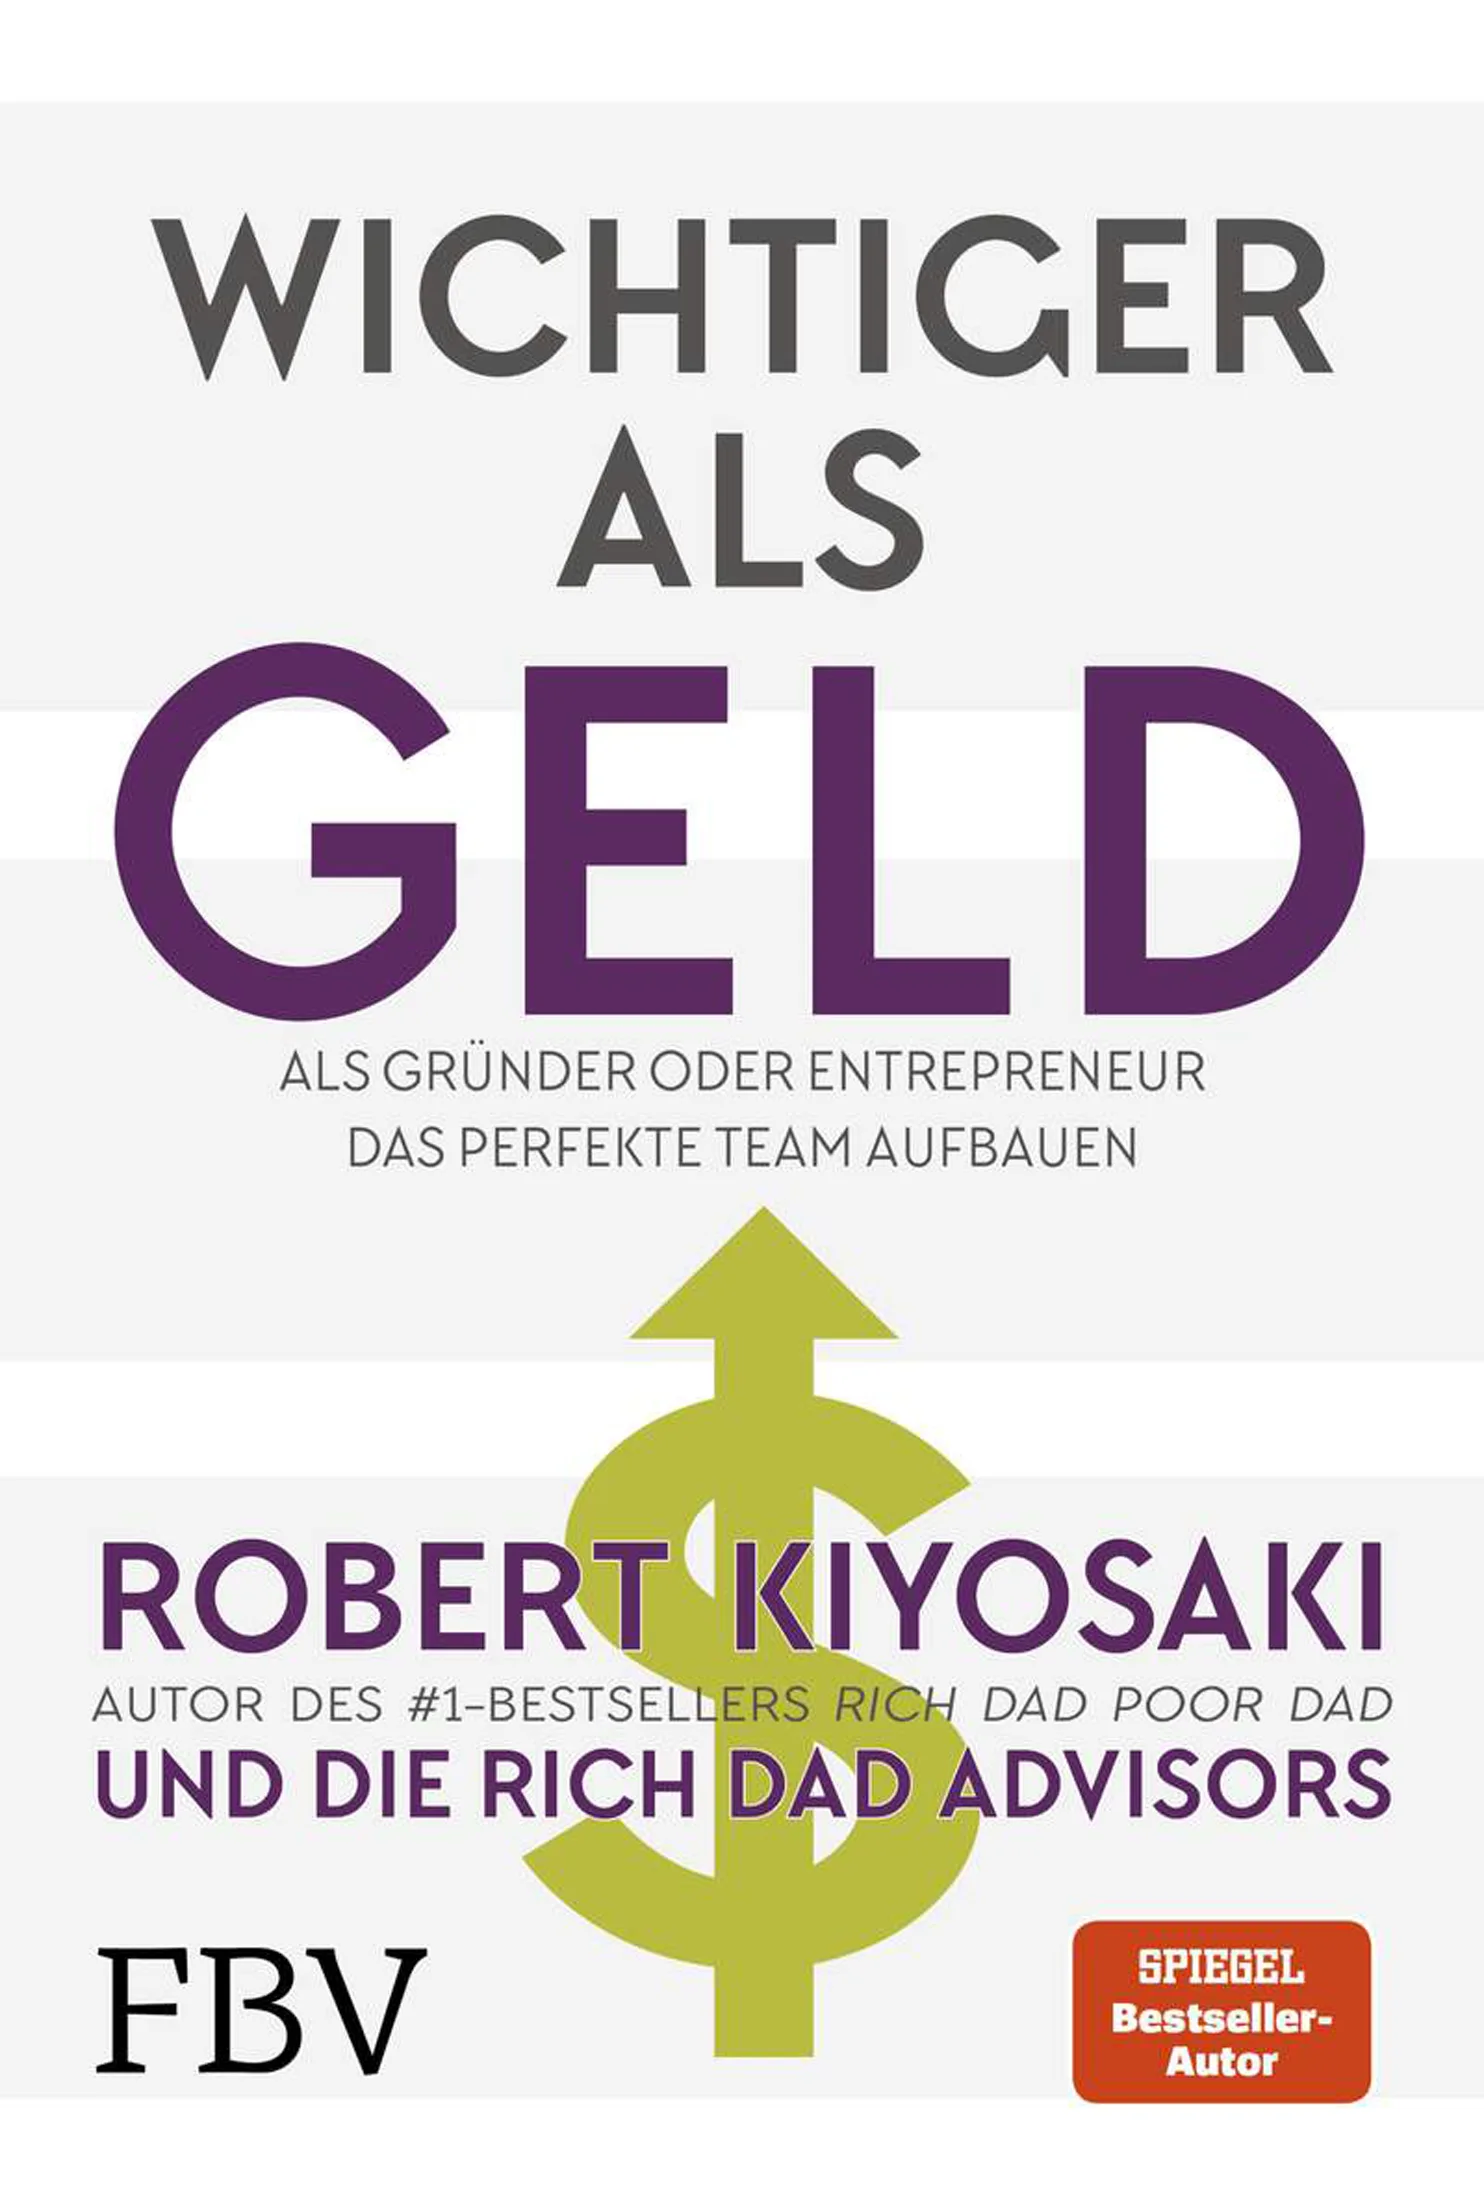 Buchcover von „Wichtiger als Geld“ von Robert Kiyosaki mit einem lila-weißen Design mit deutschem Text und den Logos von Spiegel und FBV.